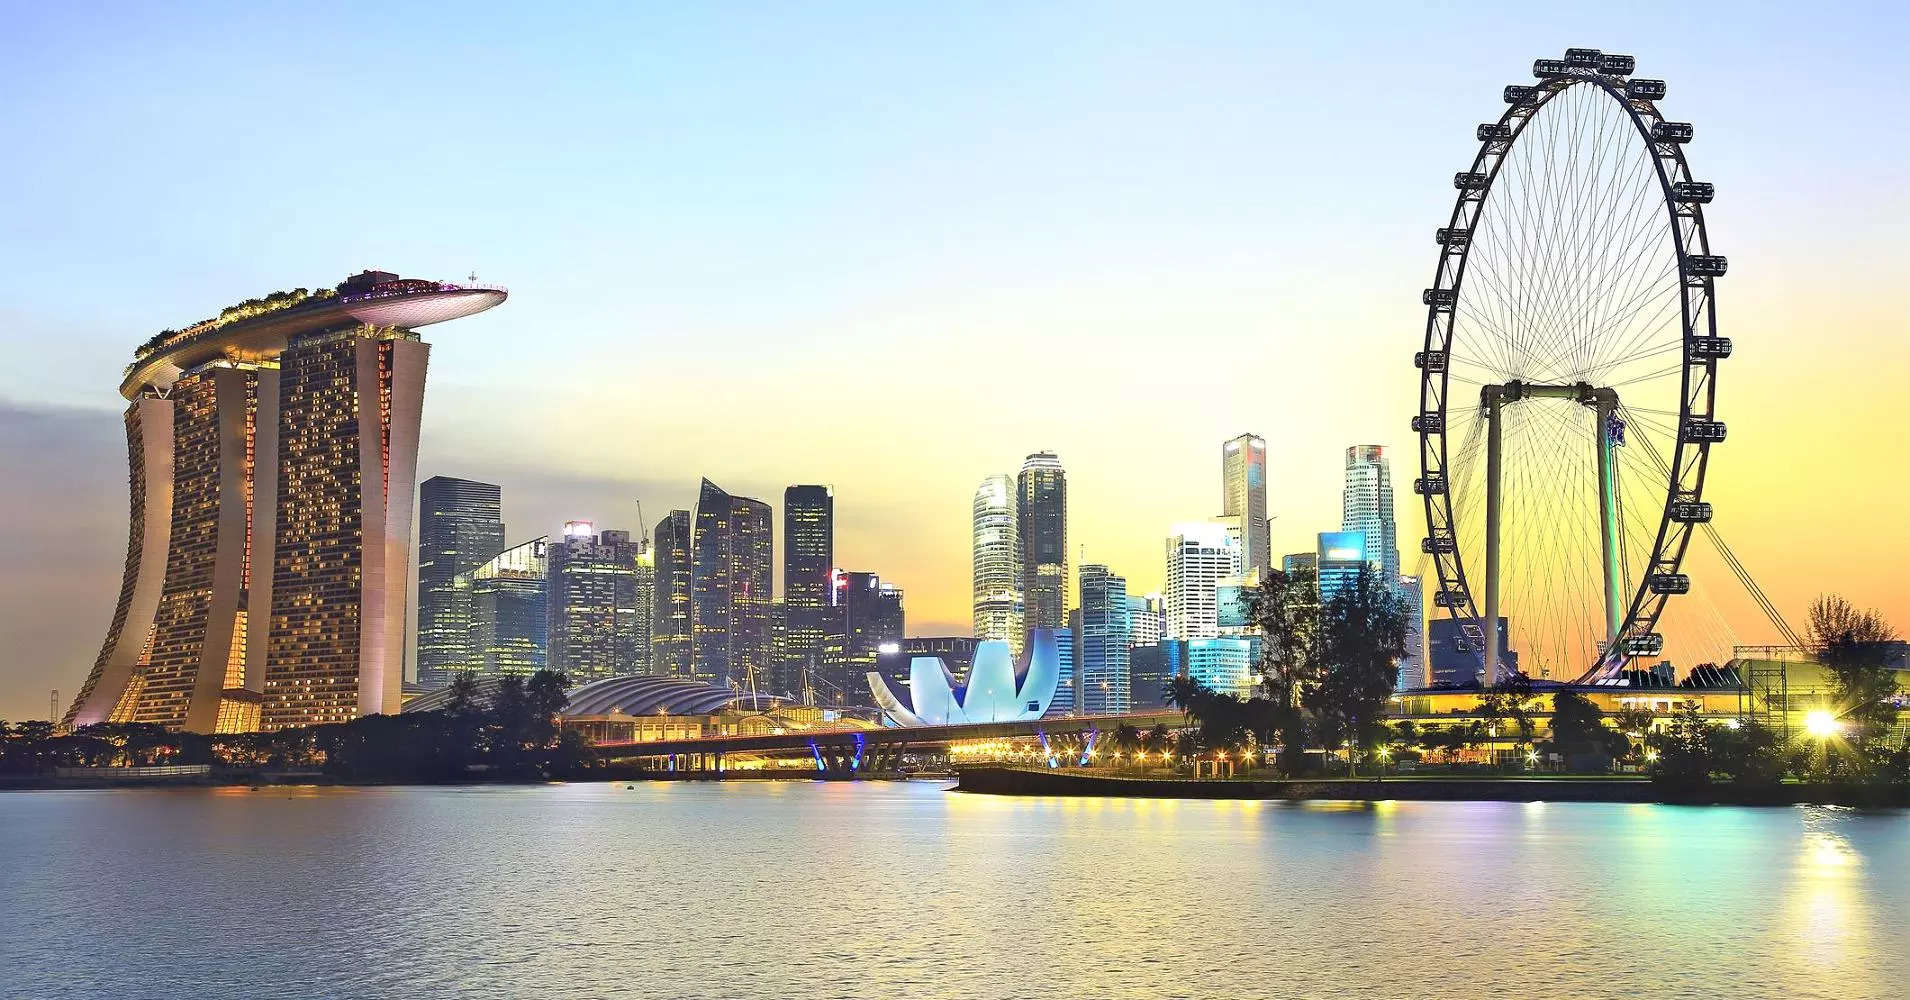 Singapur verschärft die Immobilienmarktbeschränkungen, um steigenden Zinsen entgegenzuwirken